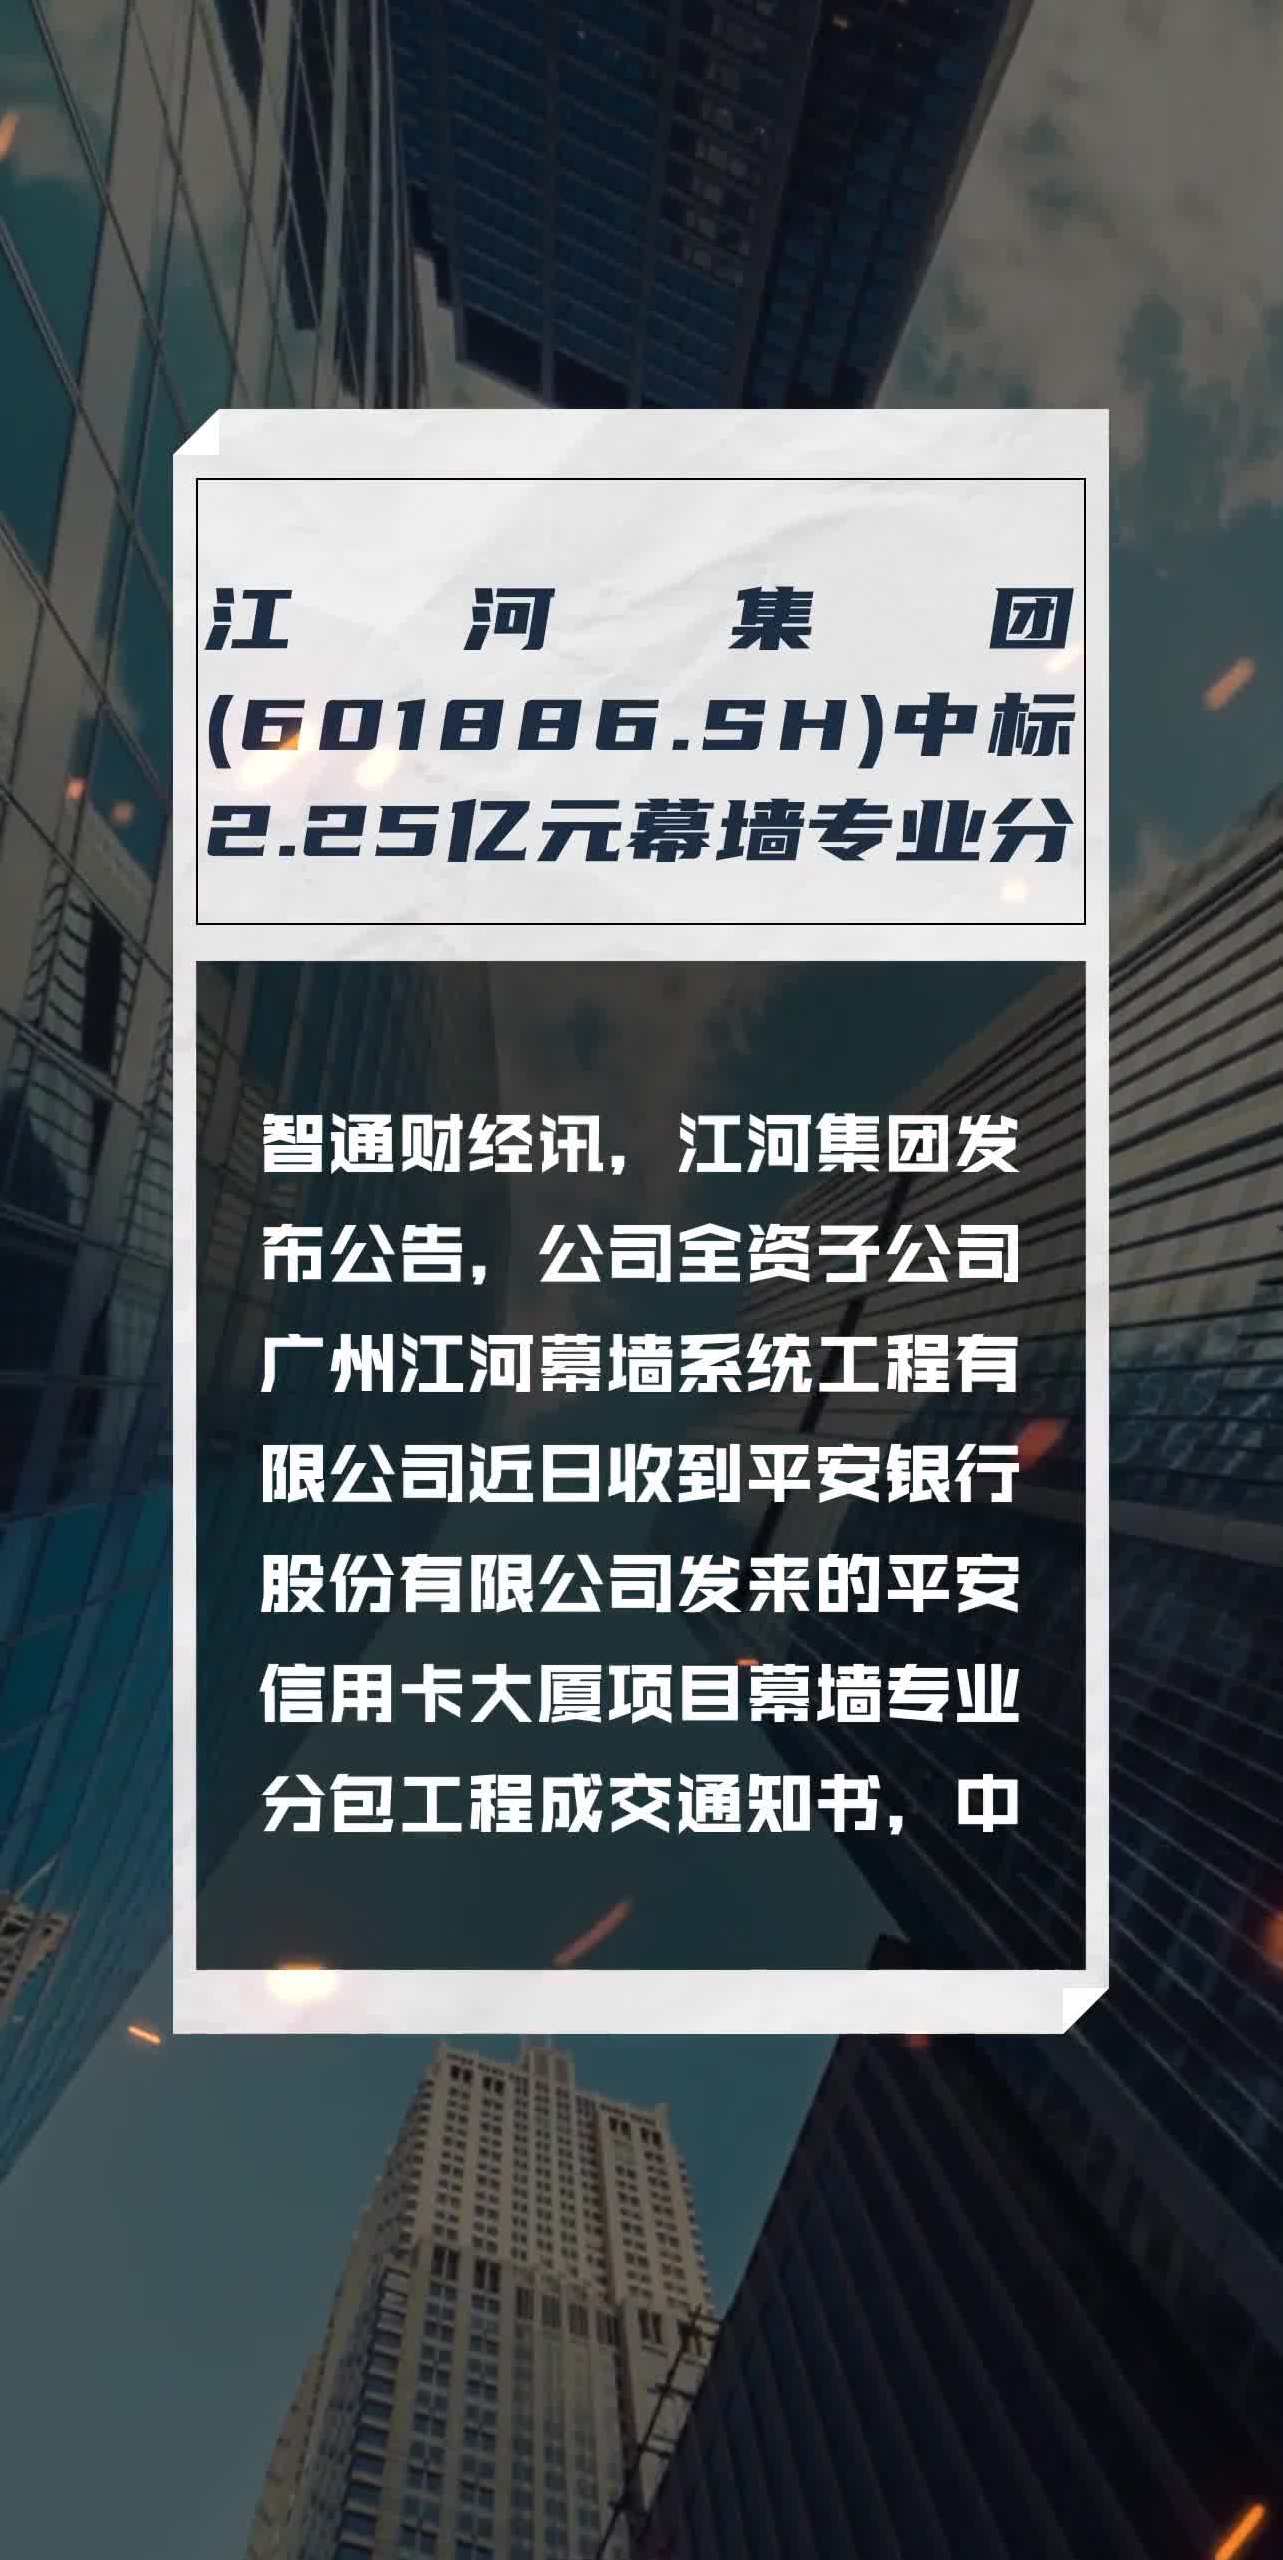 江河集团(601886sh)中标225亿元幕墙专业分包工程项目